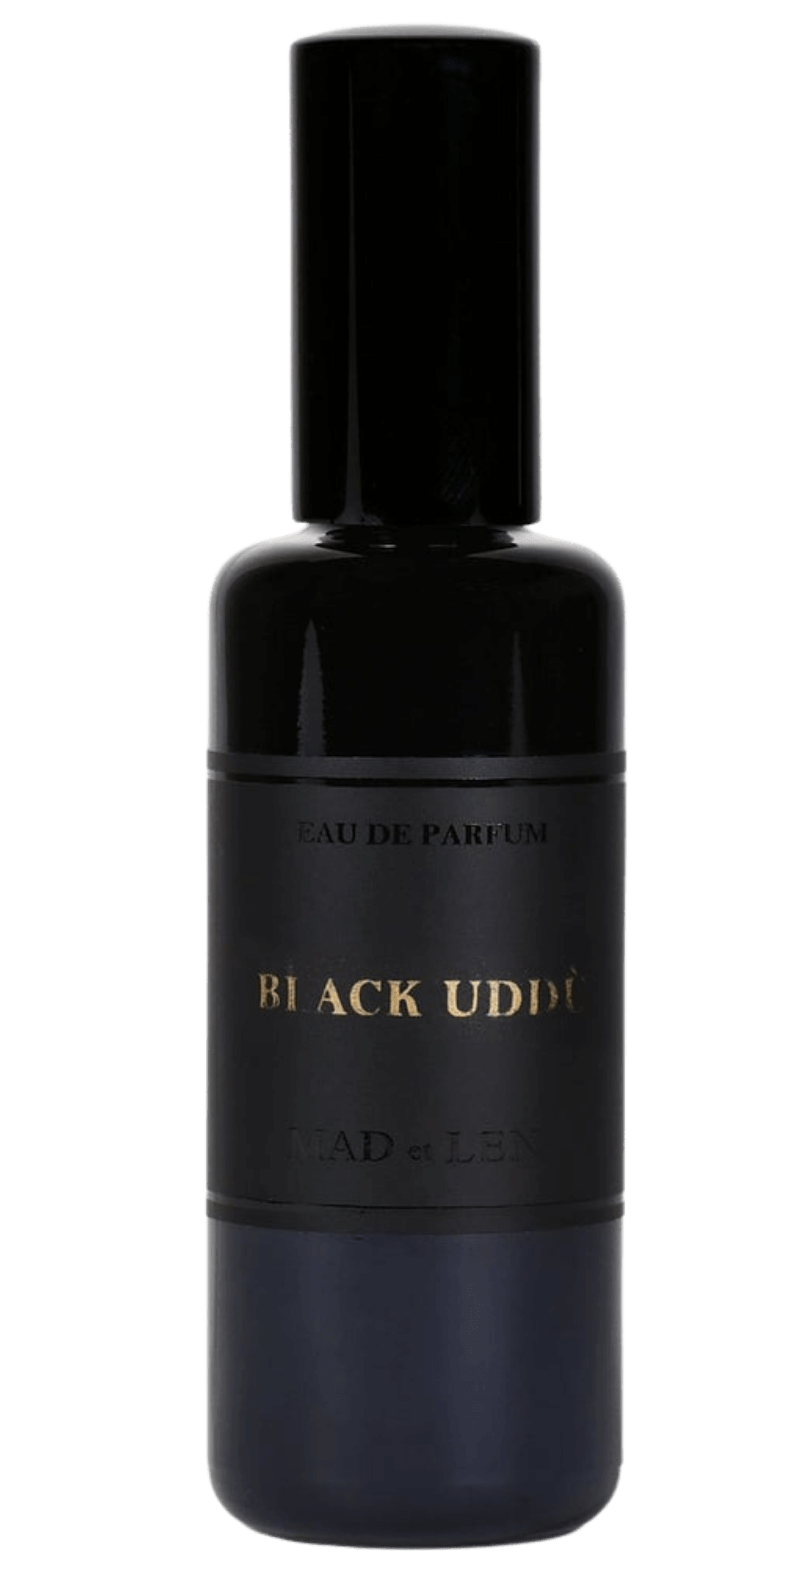 &#39;s Mad et Len Black Uddú Eau de Parfum - Bellini&#39;s Skin and Parfumerie 